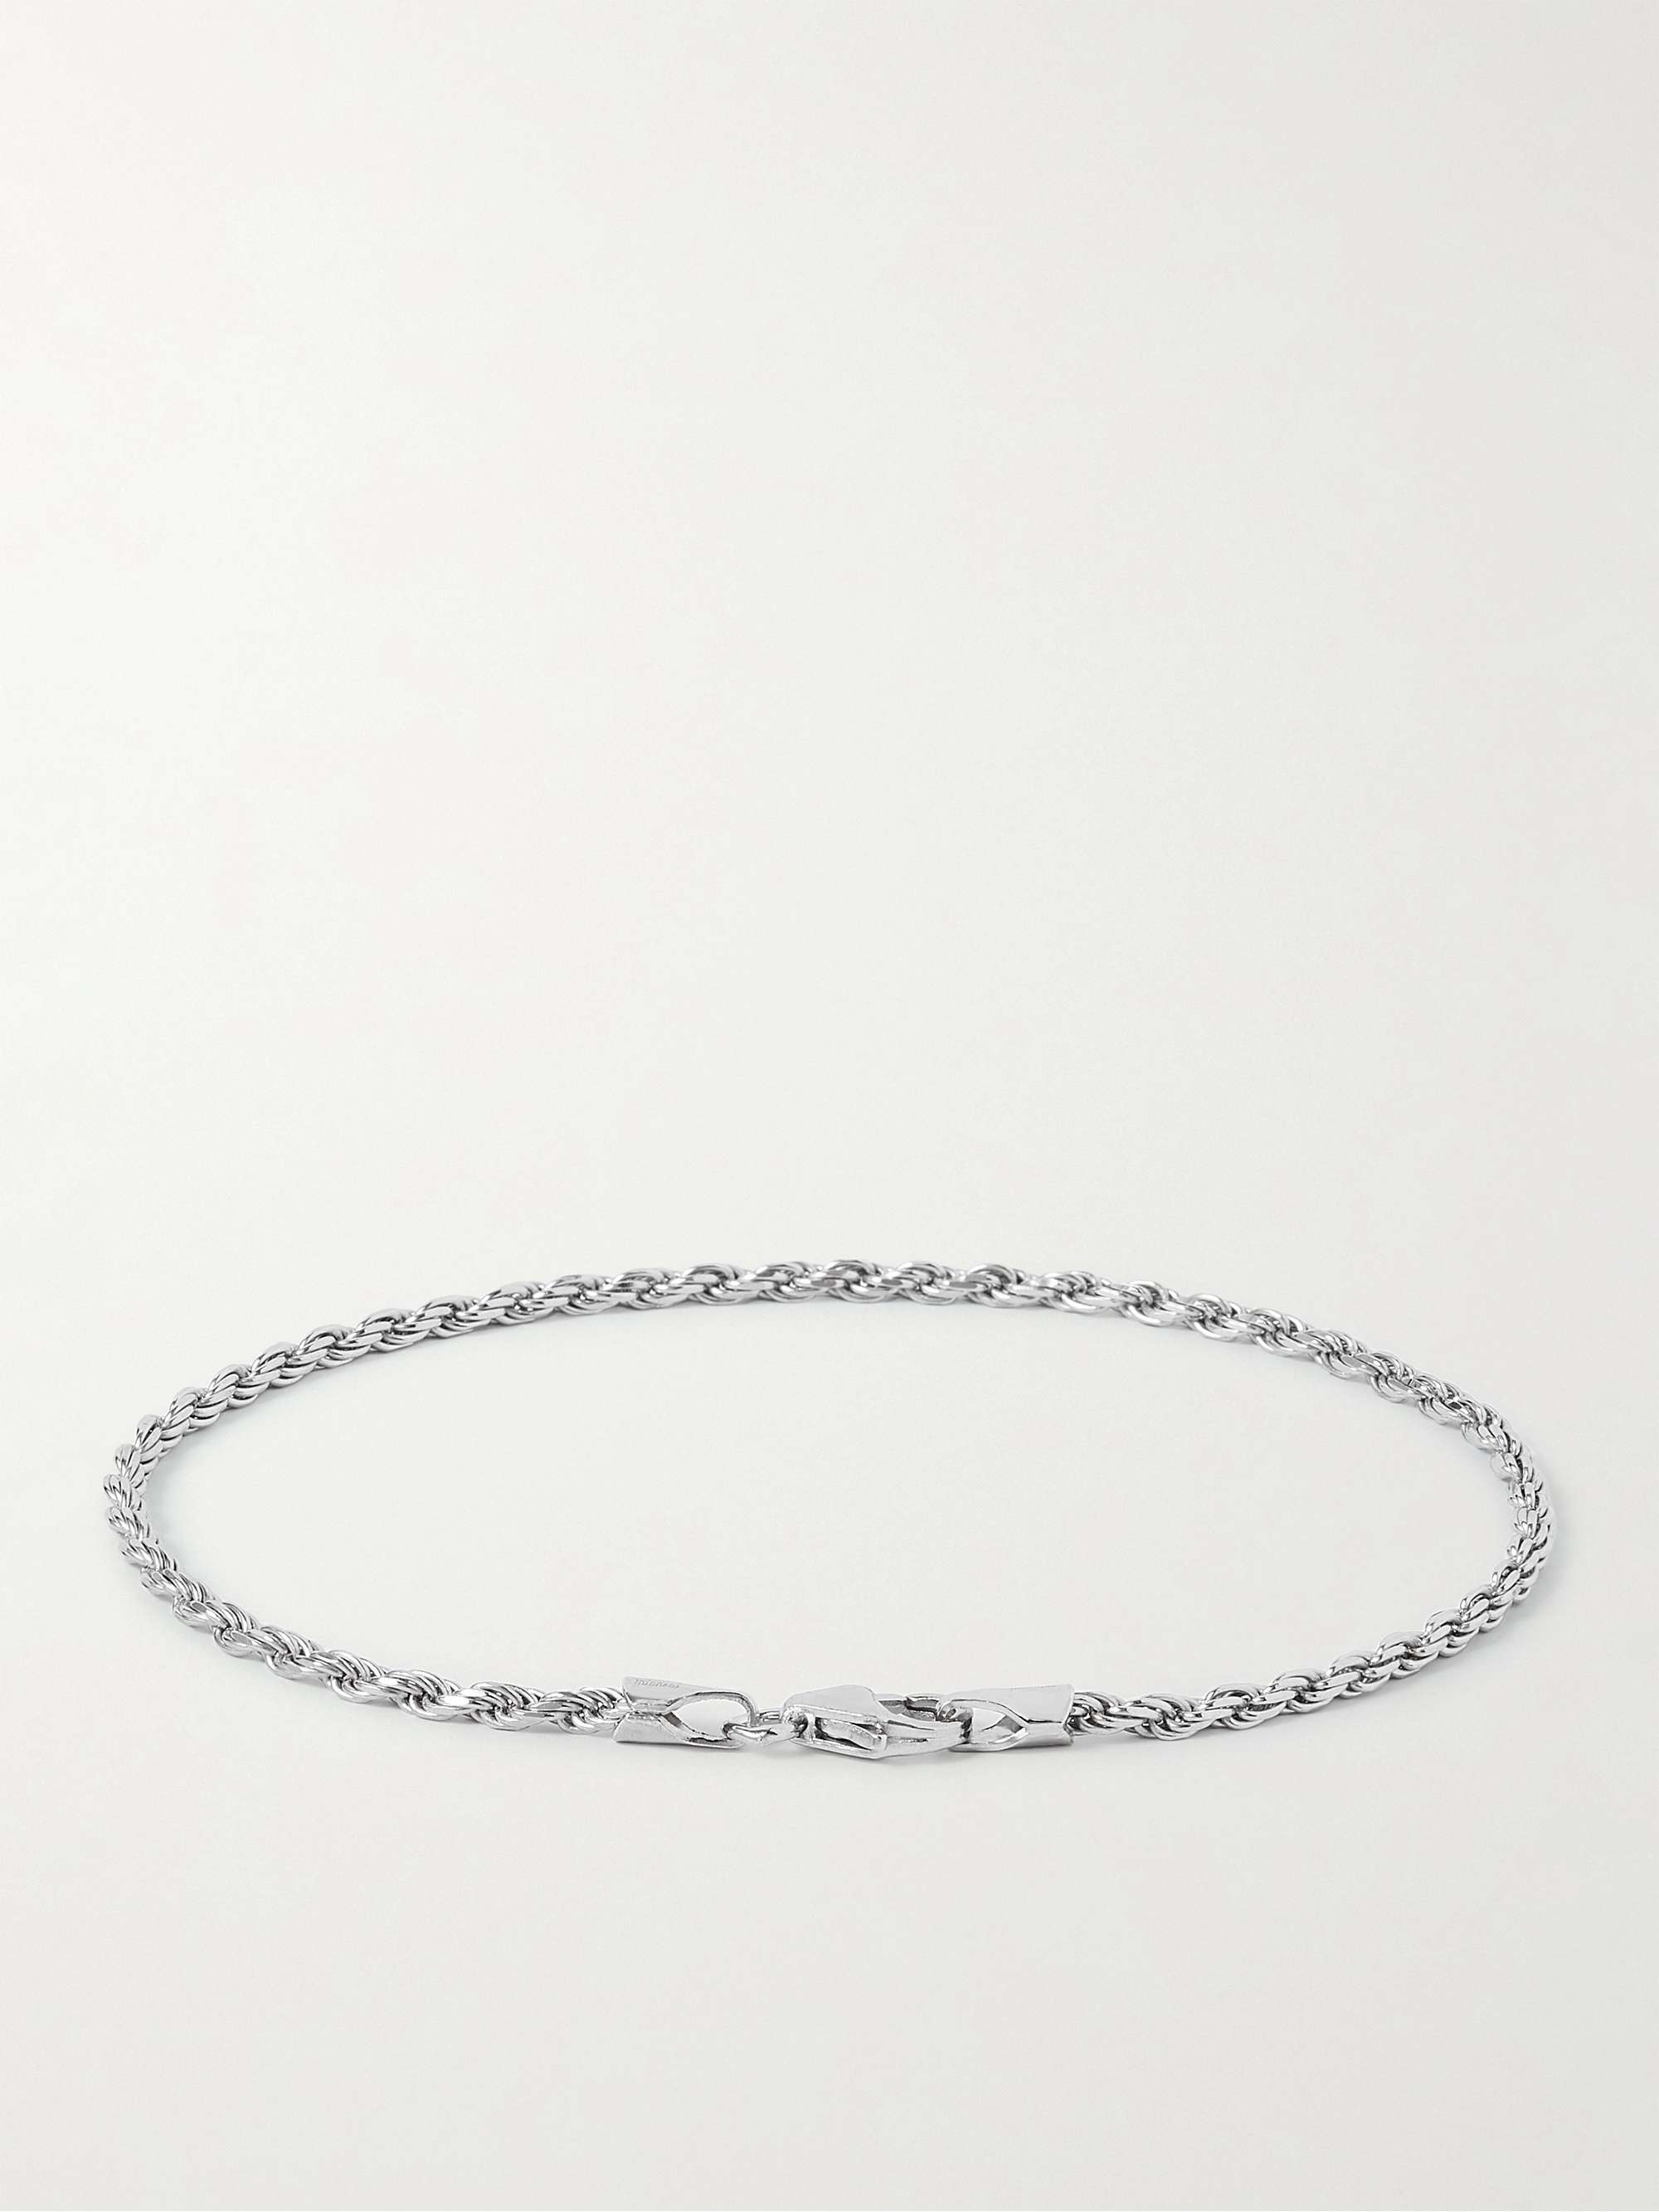 MIANSAI Oxidized Sterling Silver Chain Bracelet